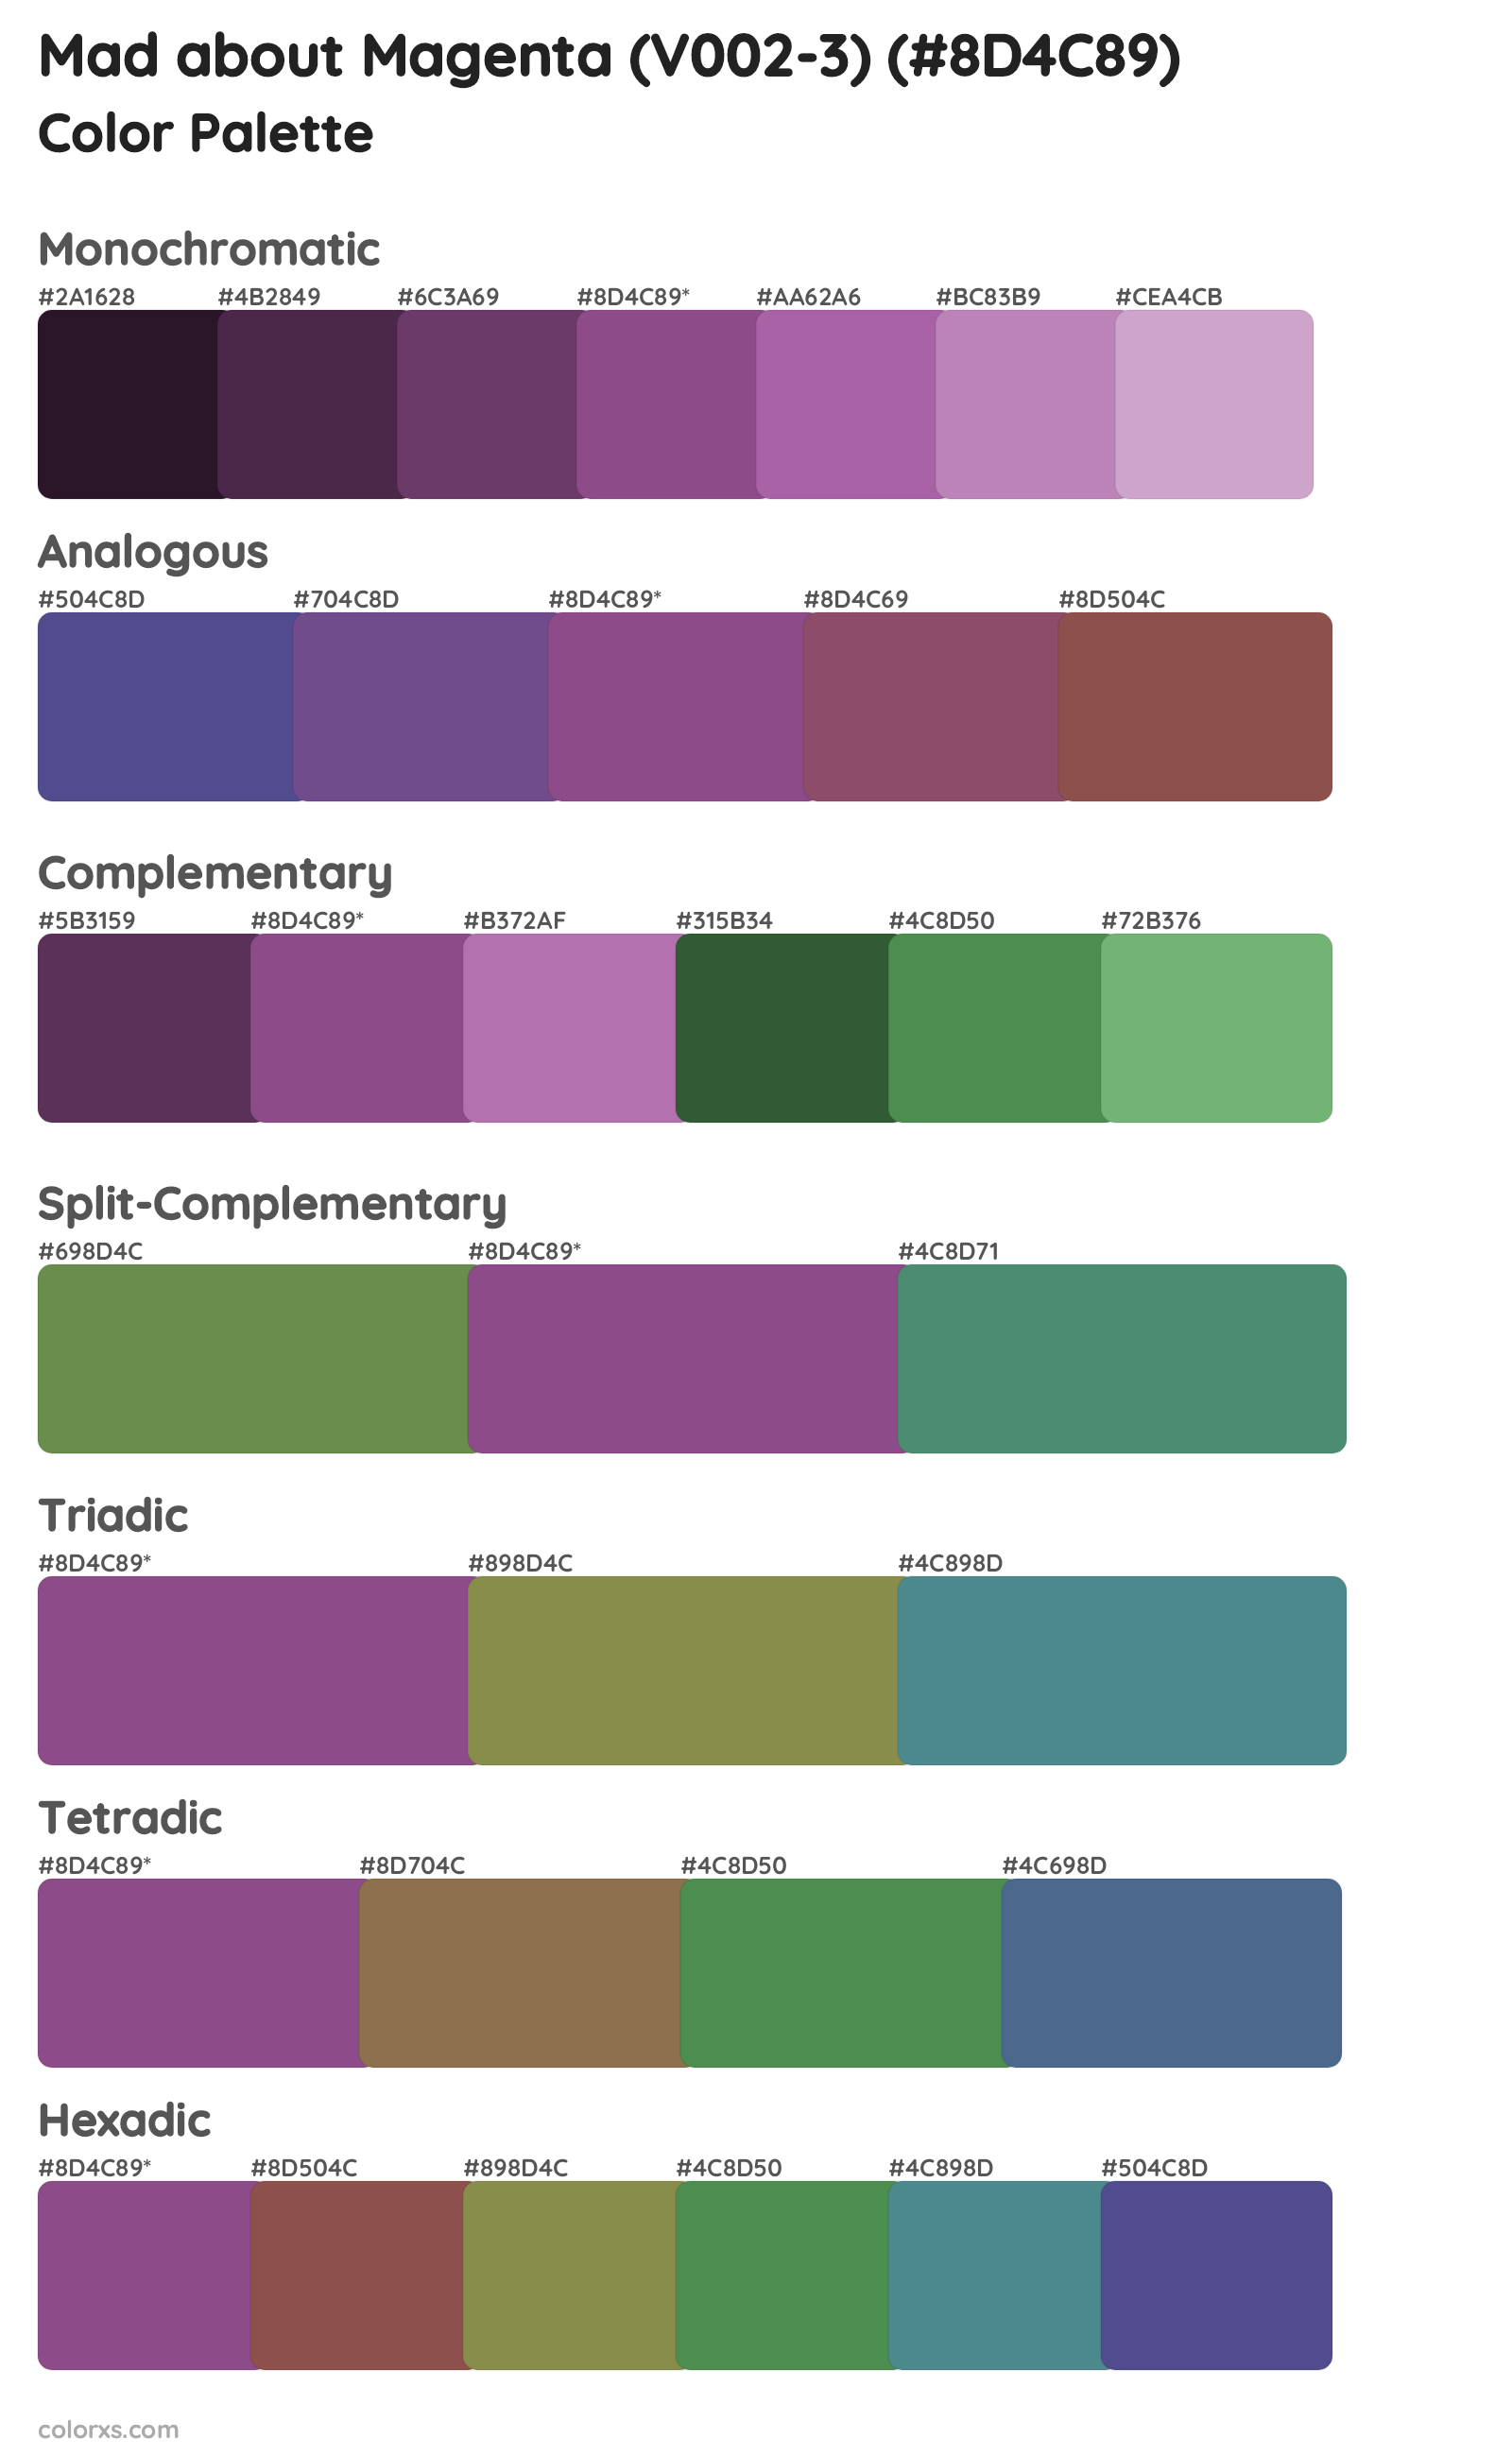 Mad about Magenta (V002-3) Color Scheme Palettes